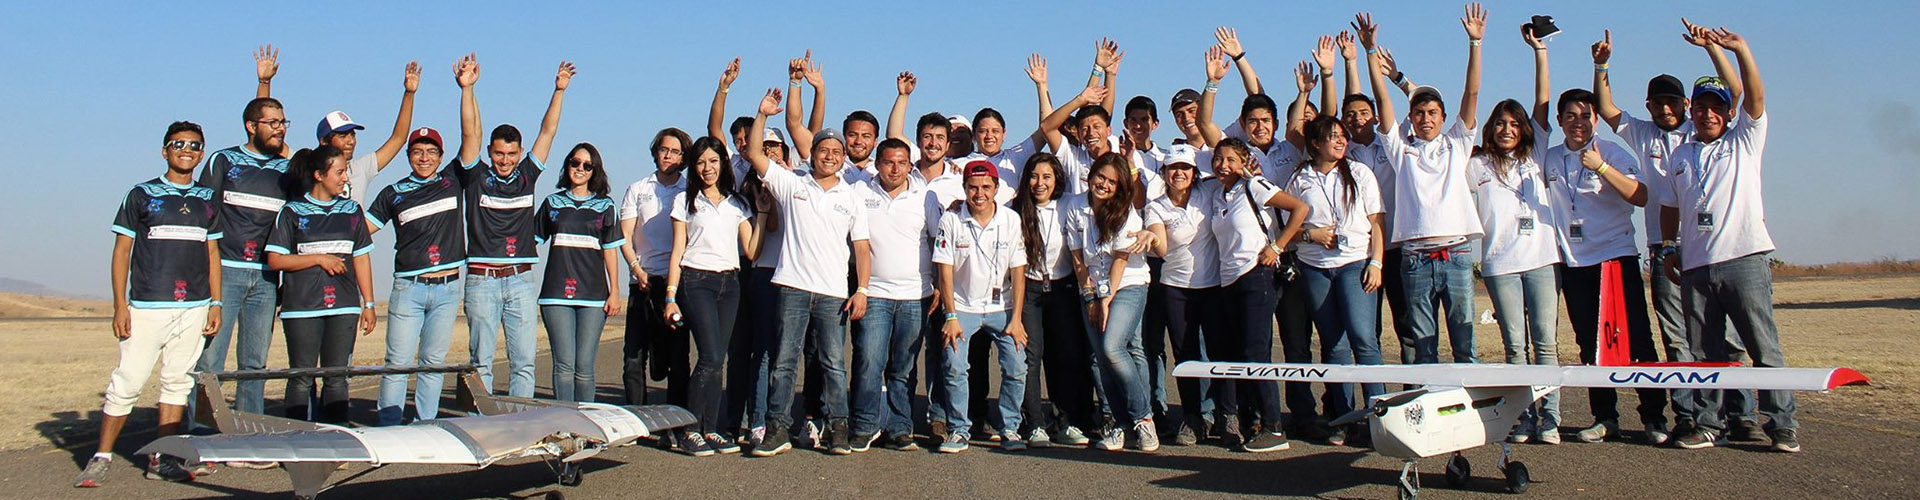 Equipos Representativos Unaq Universidad Aeronáutica En Querétaro 3960